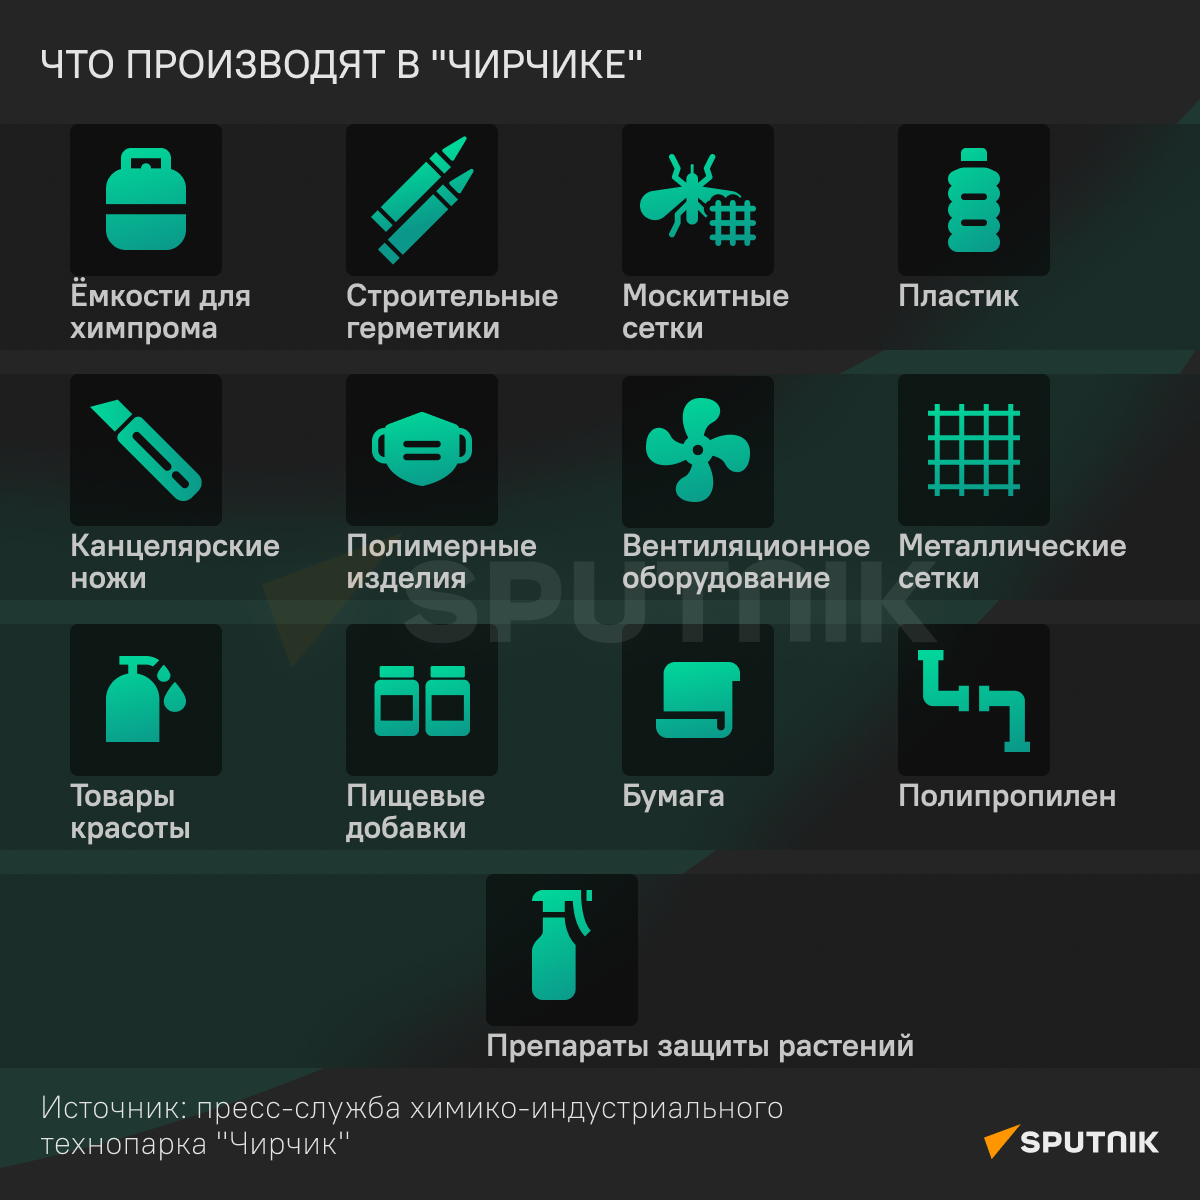 Технопарк Чирчик инфографика 2 - Sputnik Узбекистан